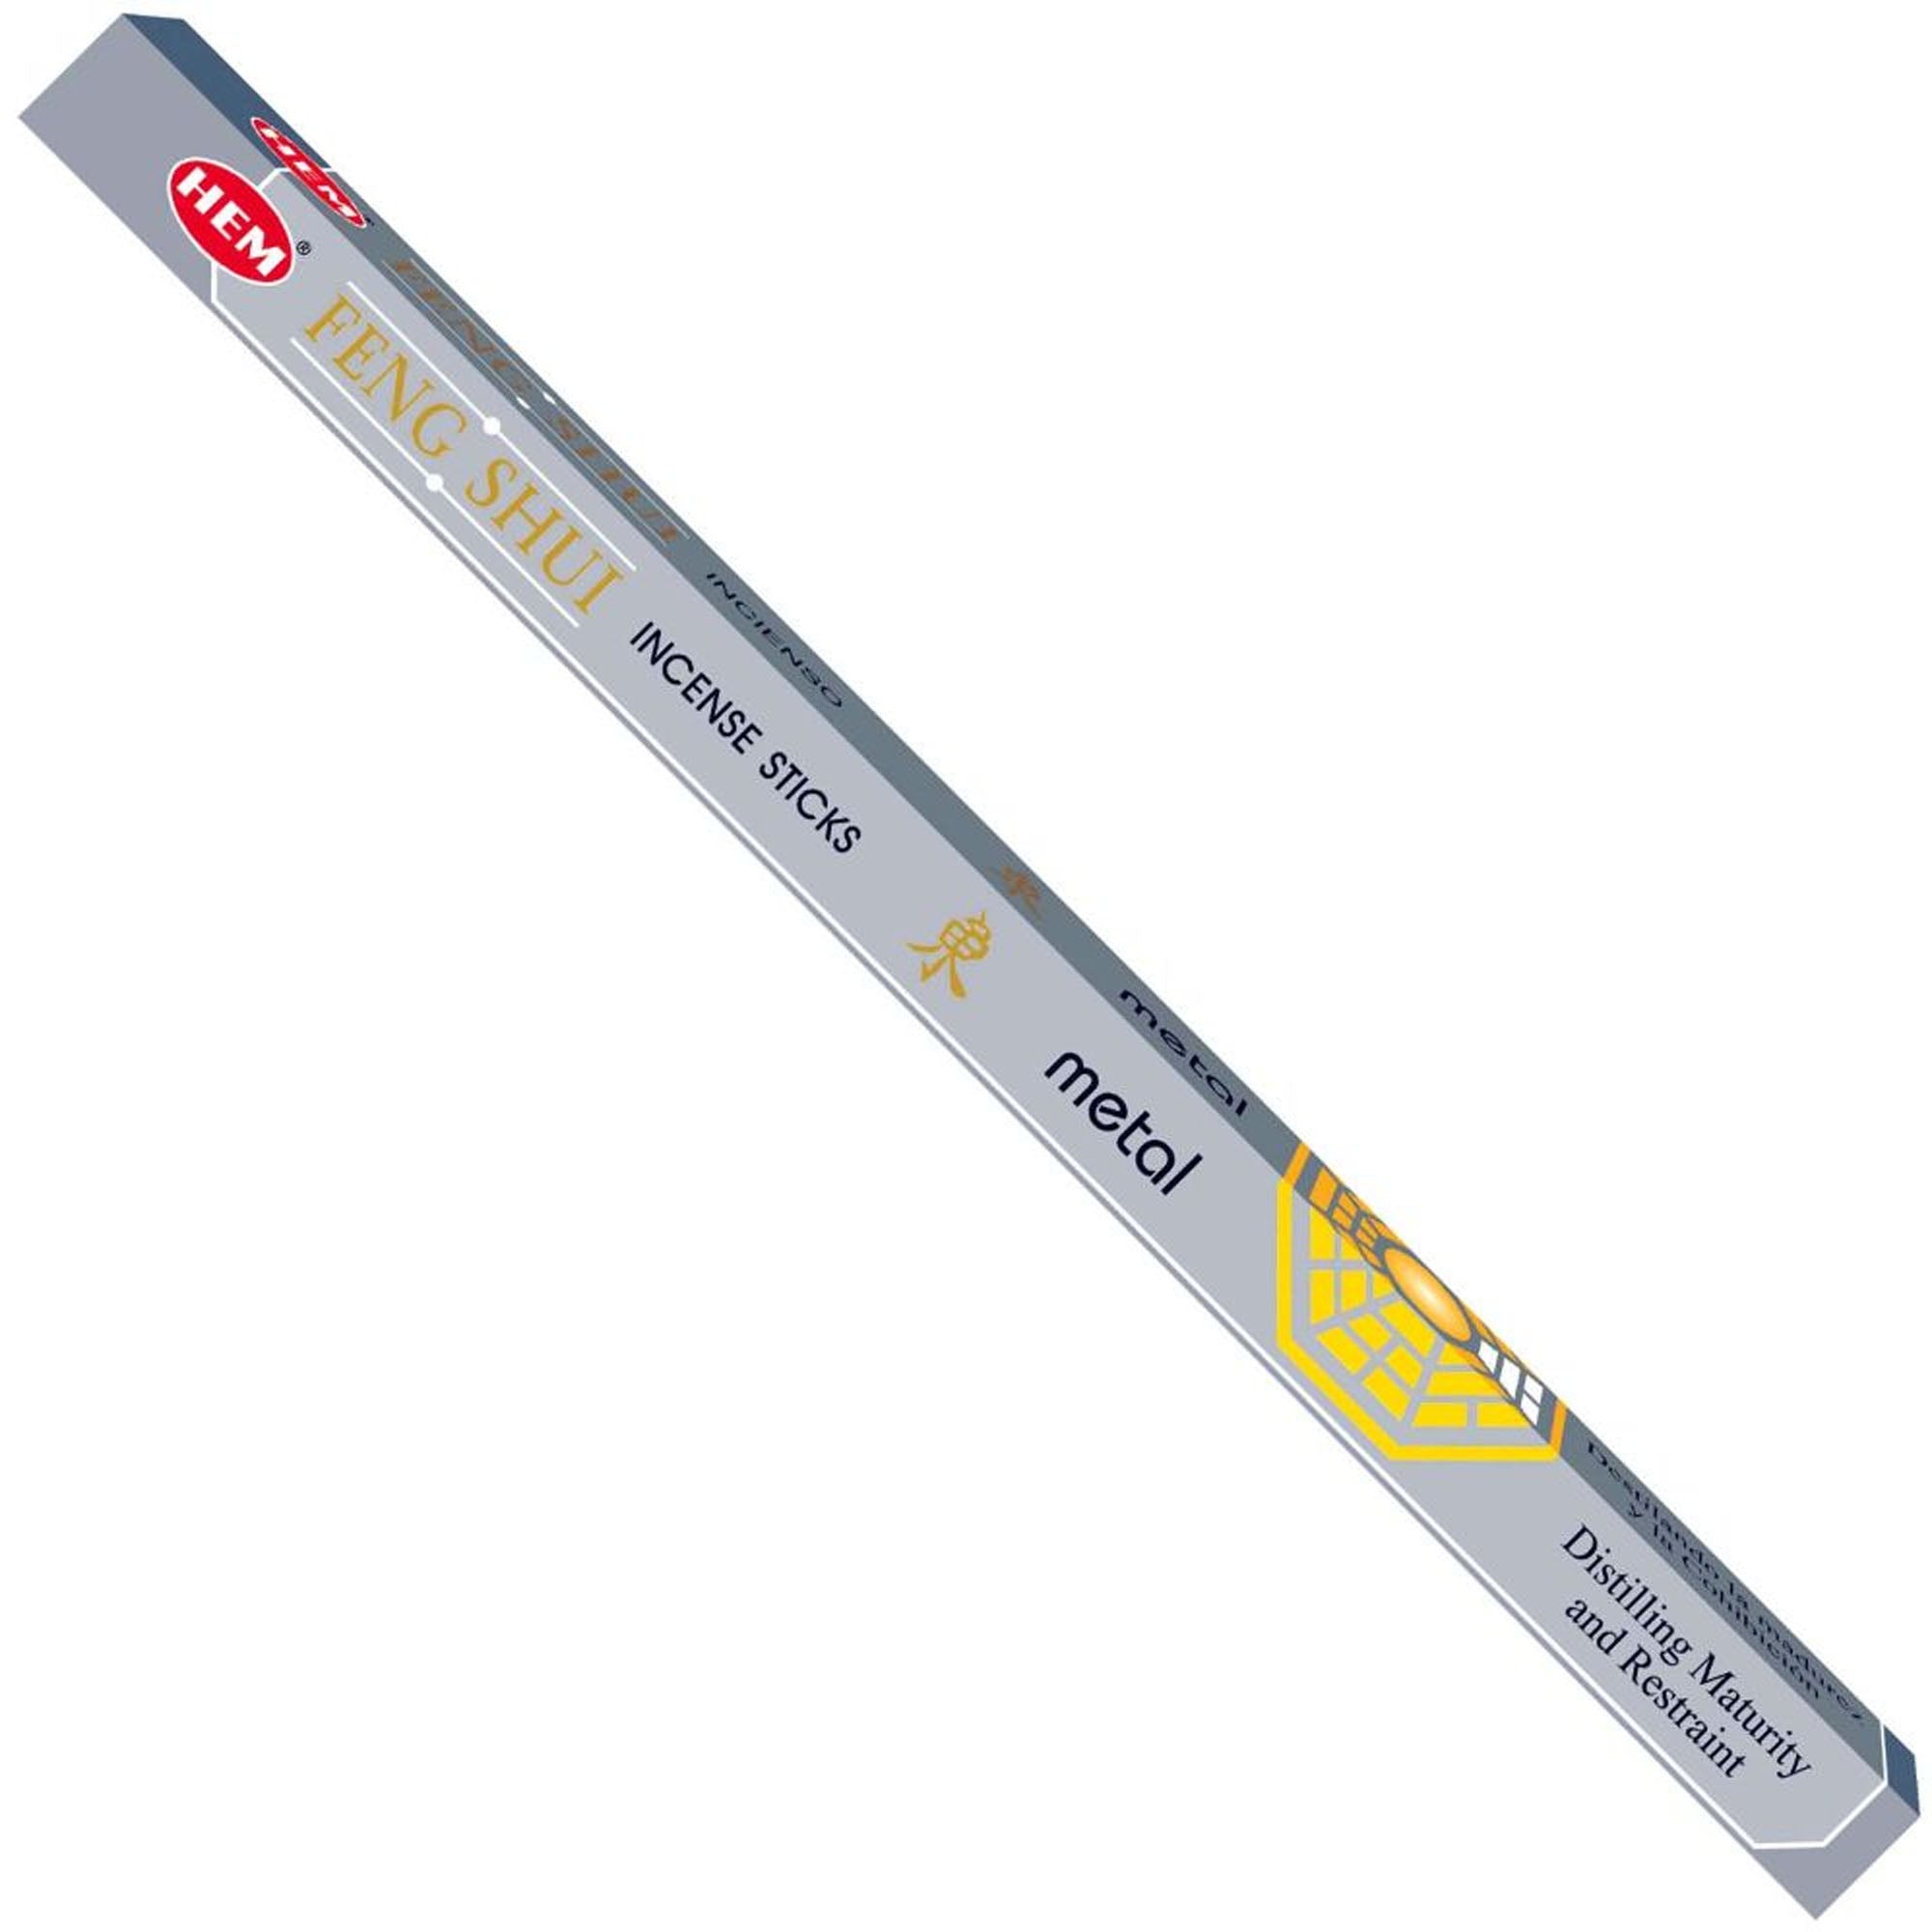 Hem - Square - Feng Shui Metal Incense Sticks